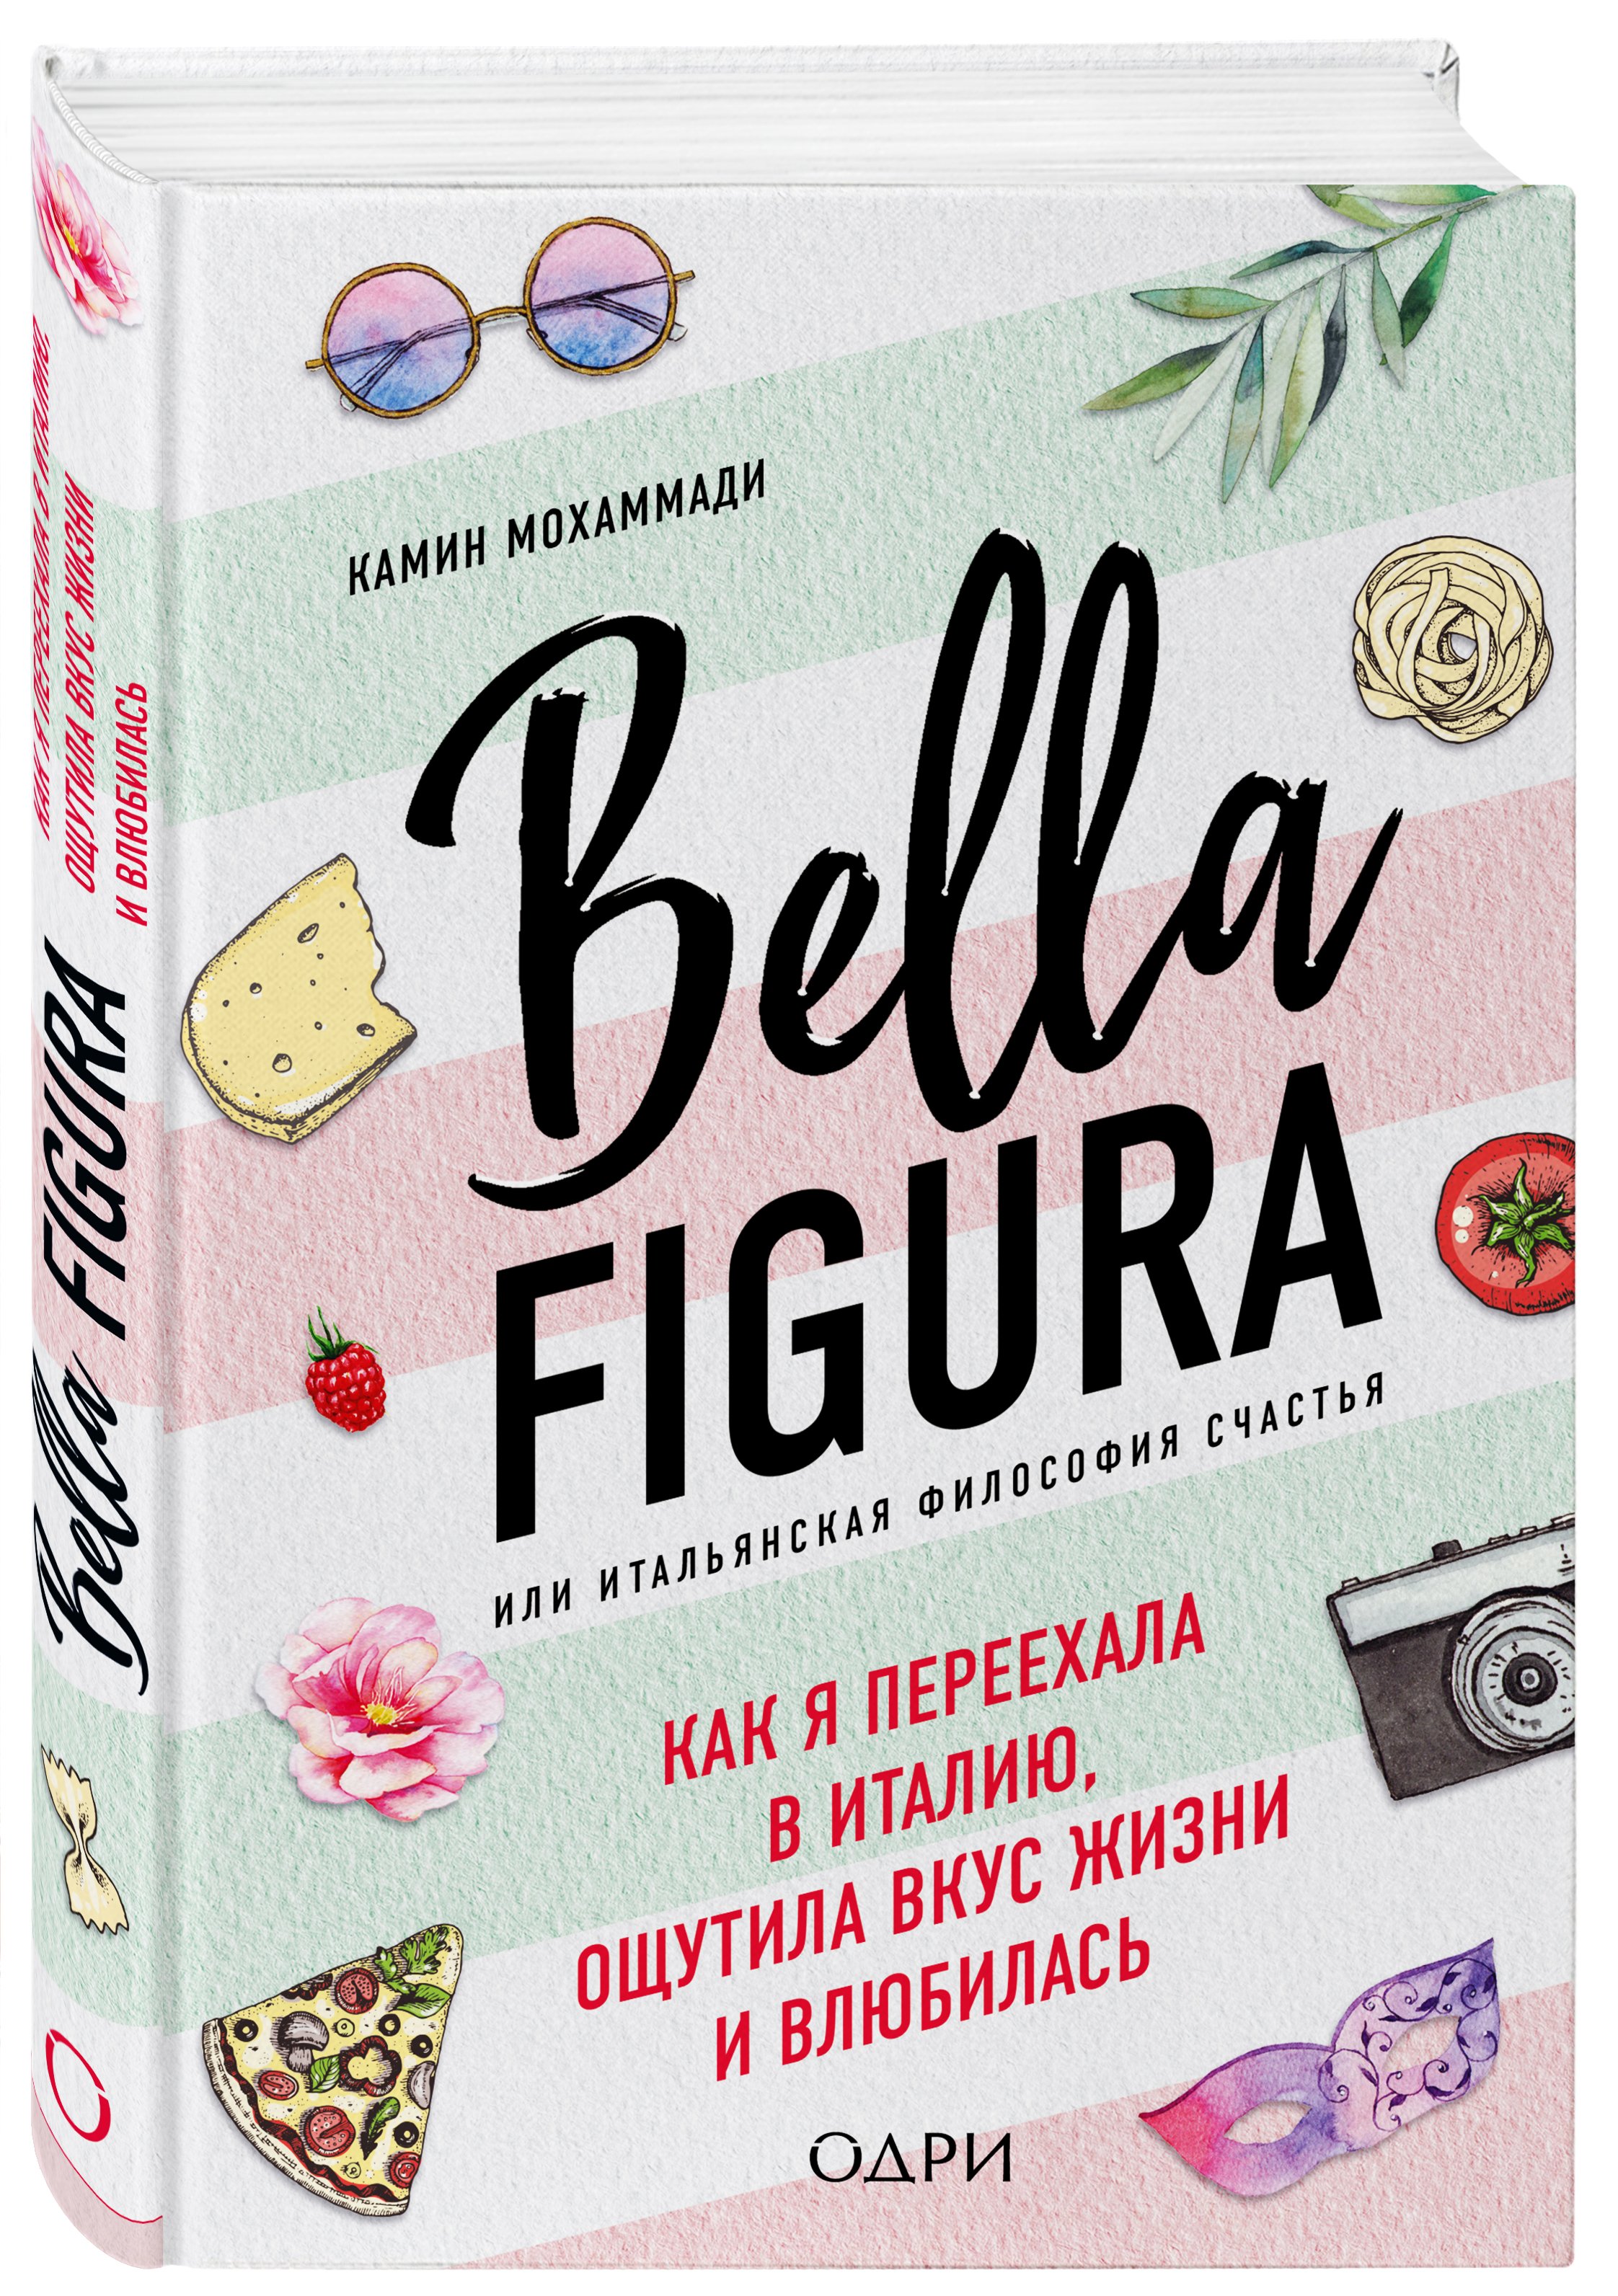 Bella Figura, или Итальянская философия счастья. Как я переехала в Италию, ощутила вкус жизни и влюбилась - Мохаммади Камин